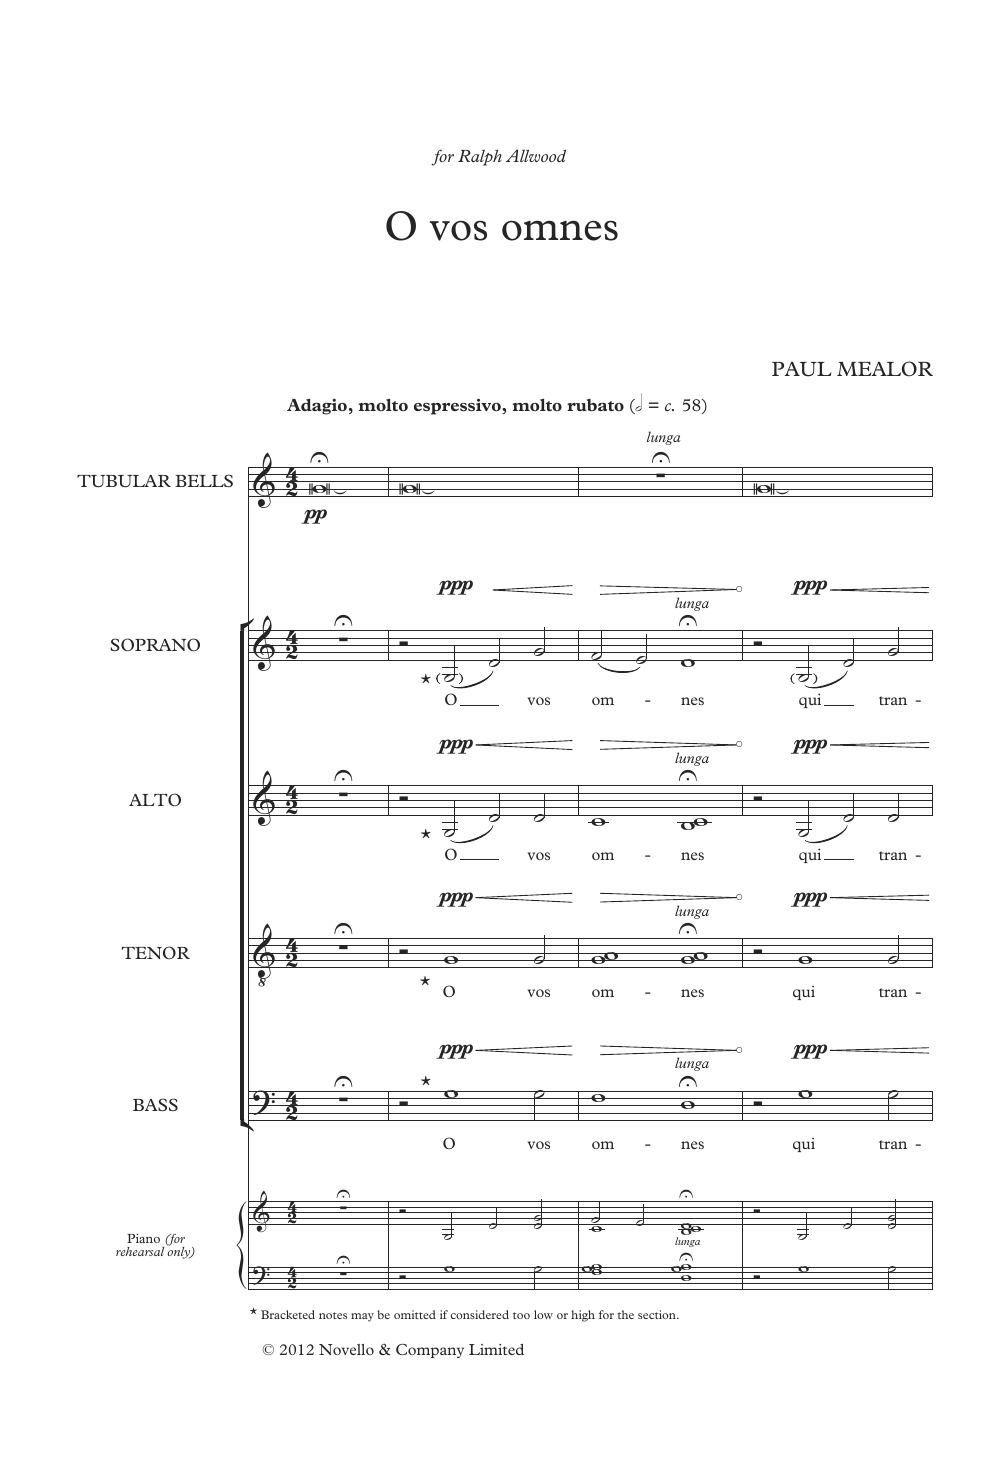 Download Paul Mealor O Vos Omnes Sheet Music